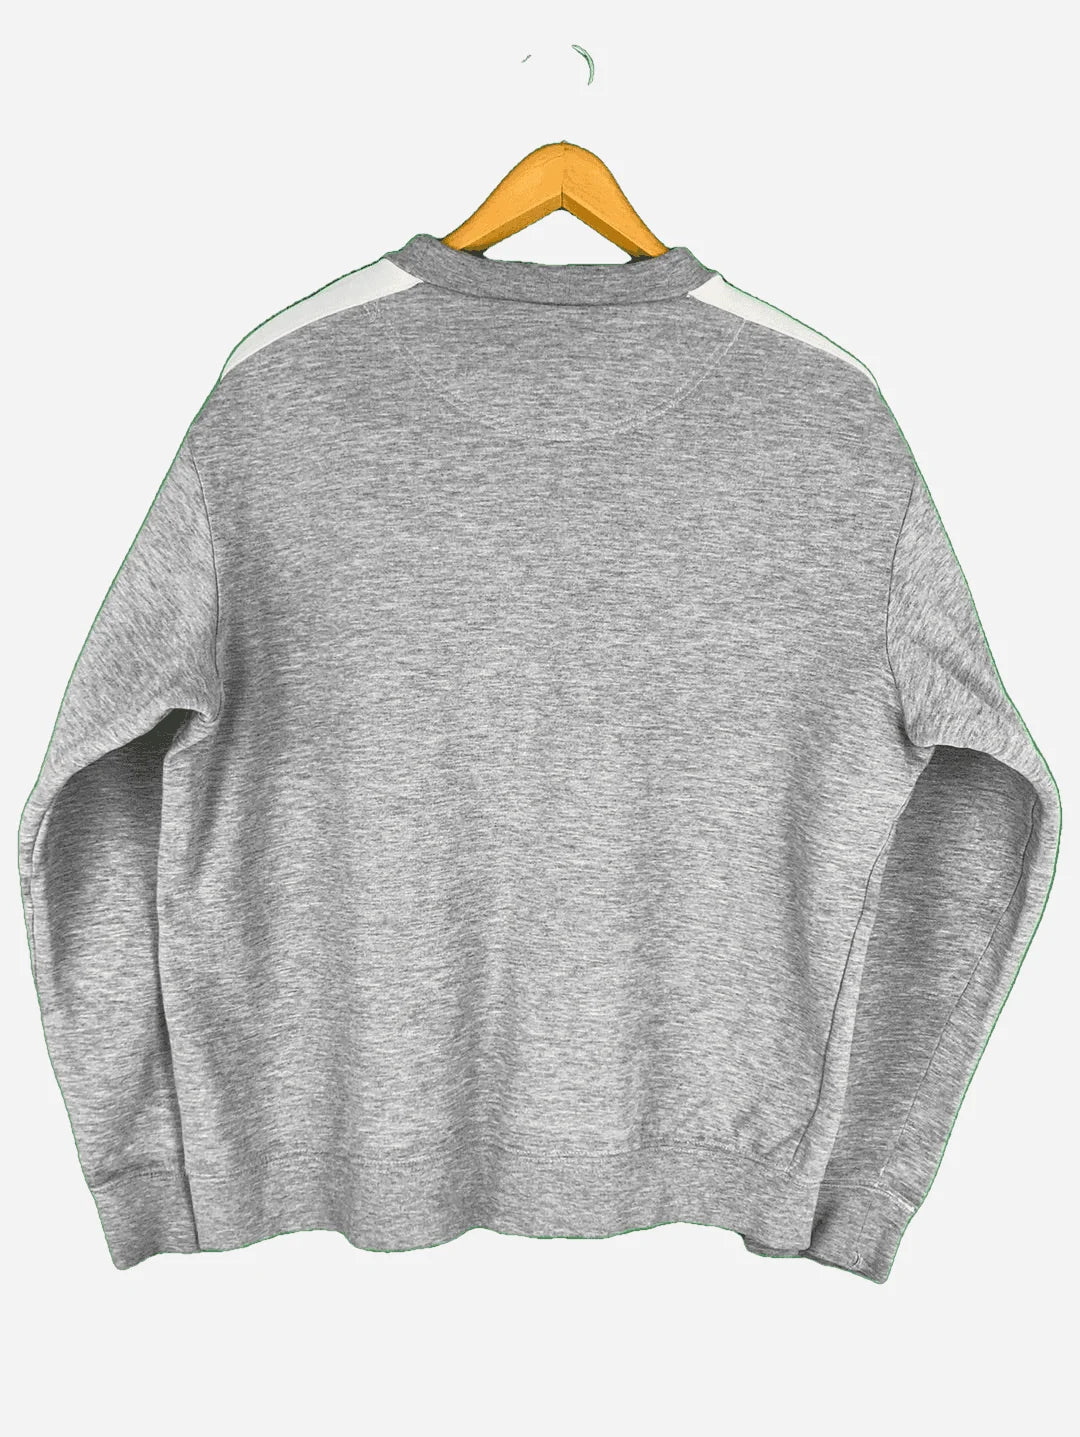 Nike Sweater (S)